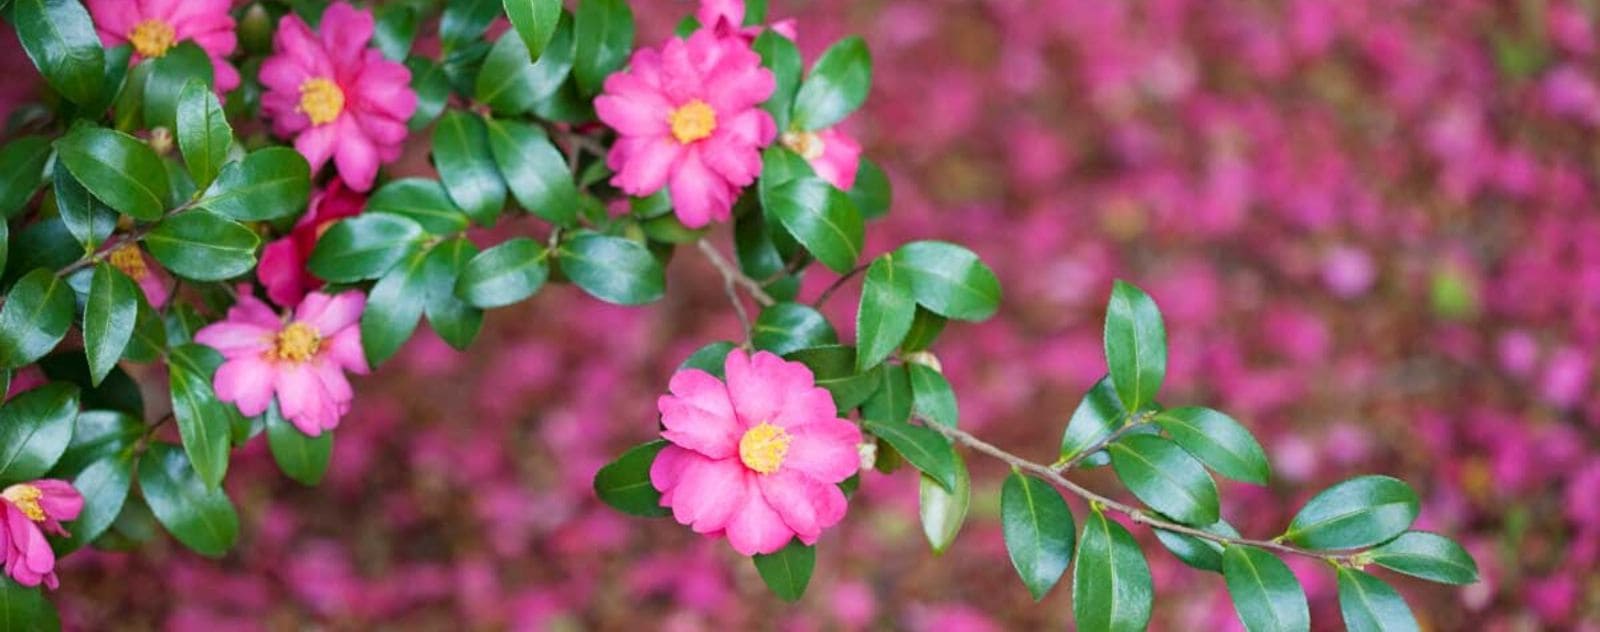 Camellia sasanqua winter Japan pink yellow